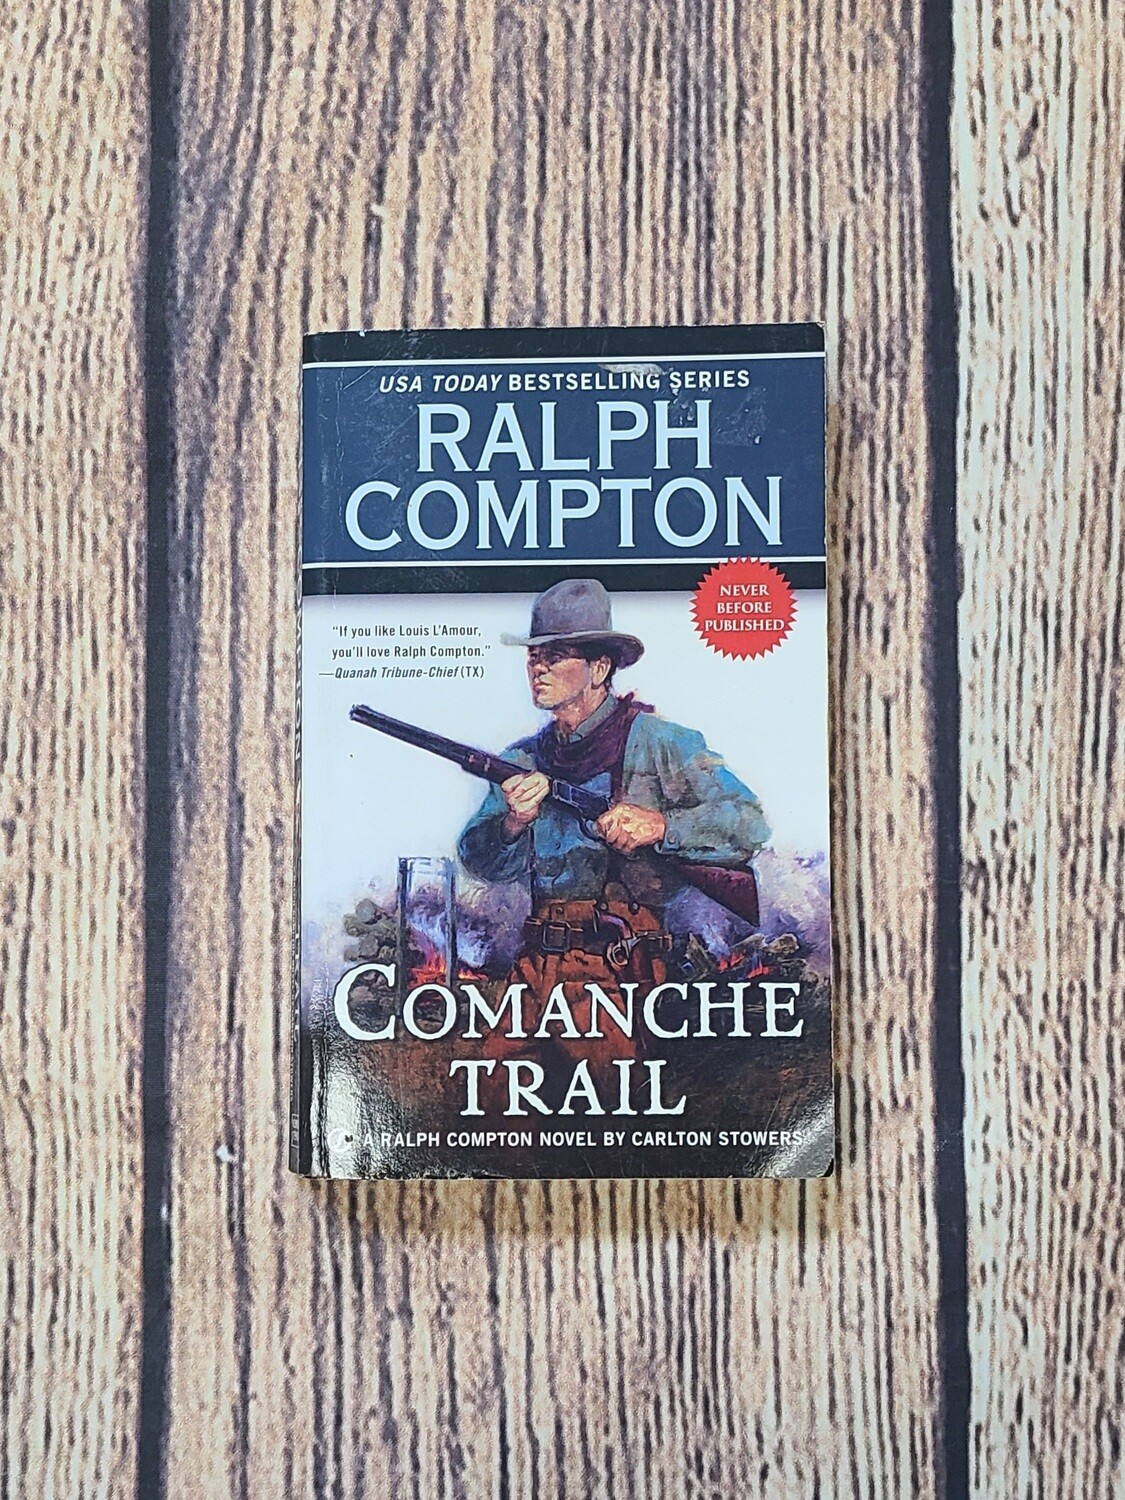 Comanche Trail by Ralph Compton